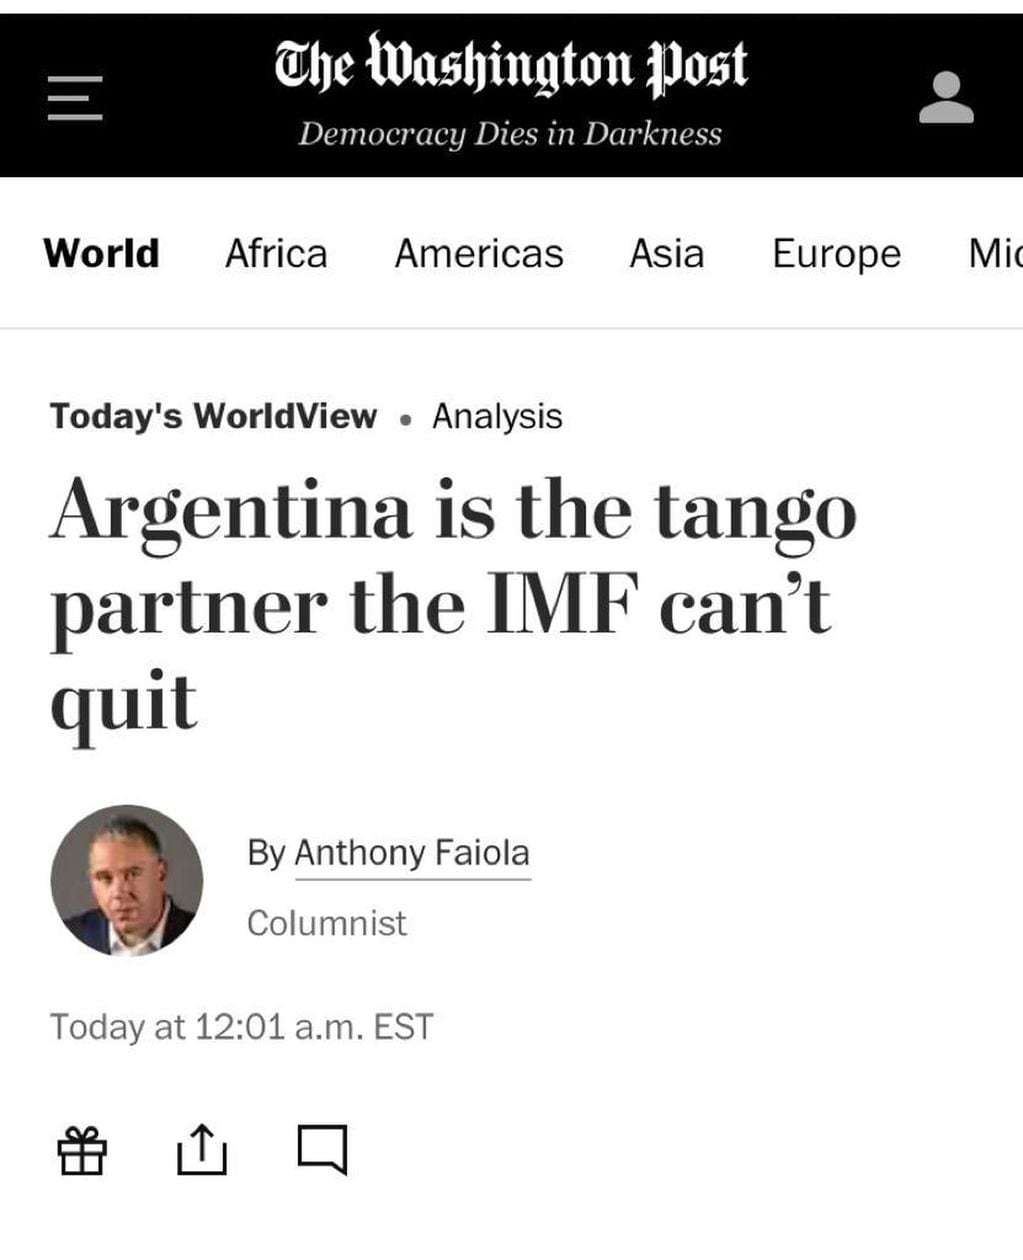 El artículo publicado por el diario sobre el acuerdo de Argentina con el FMI.